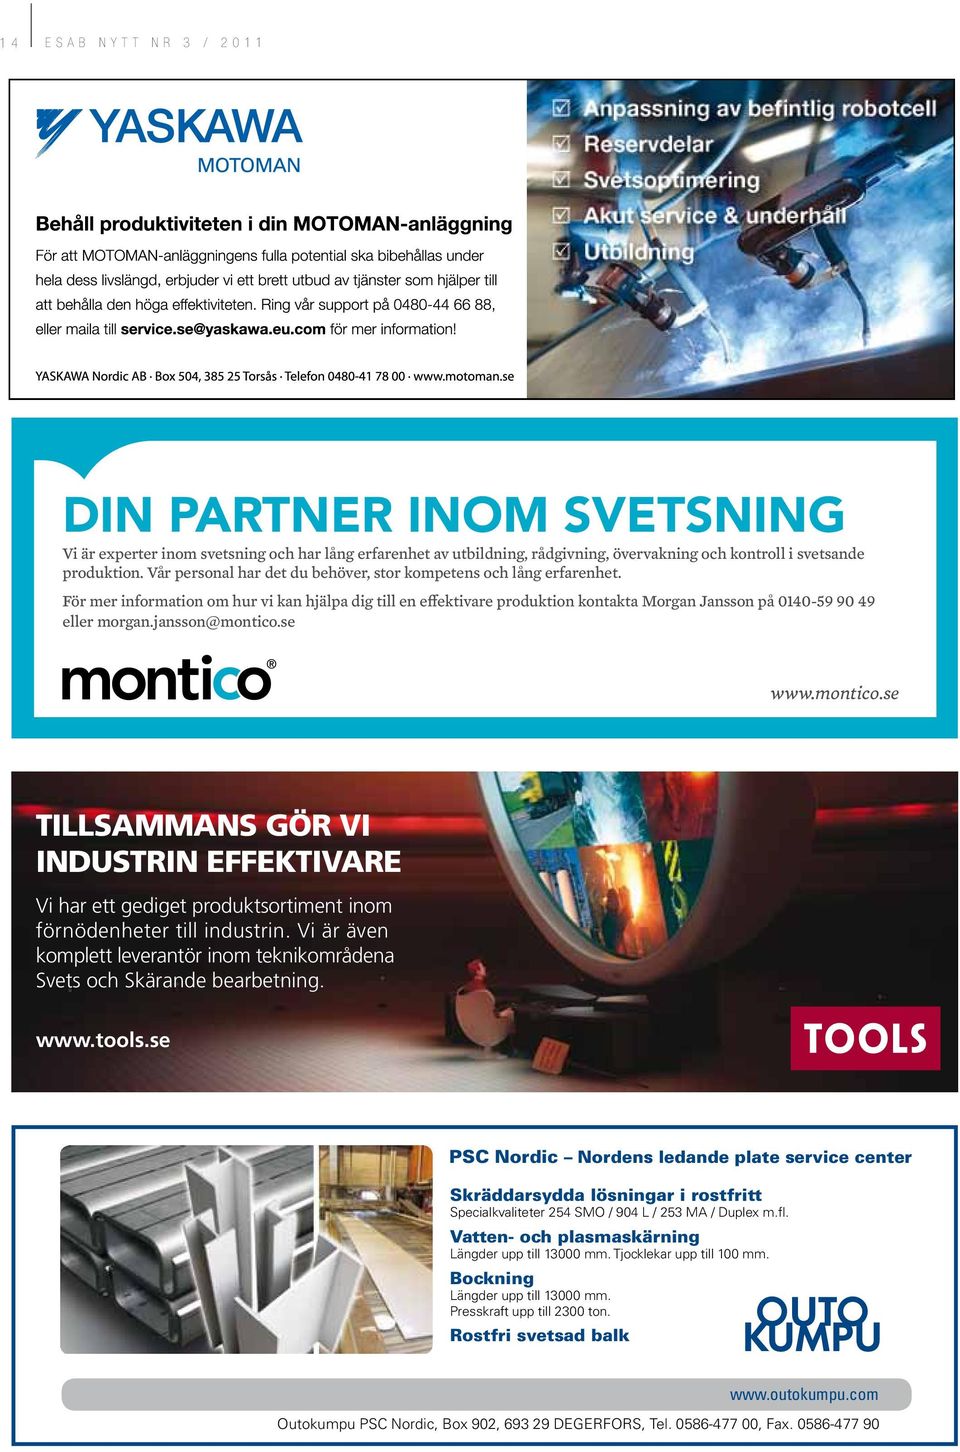 jansson@montico.se www.montico.se Tillsammans gör vi industrin effektivare Vi har ett gediget produktsortiment inom förnödenheter till industrin.